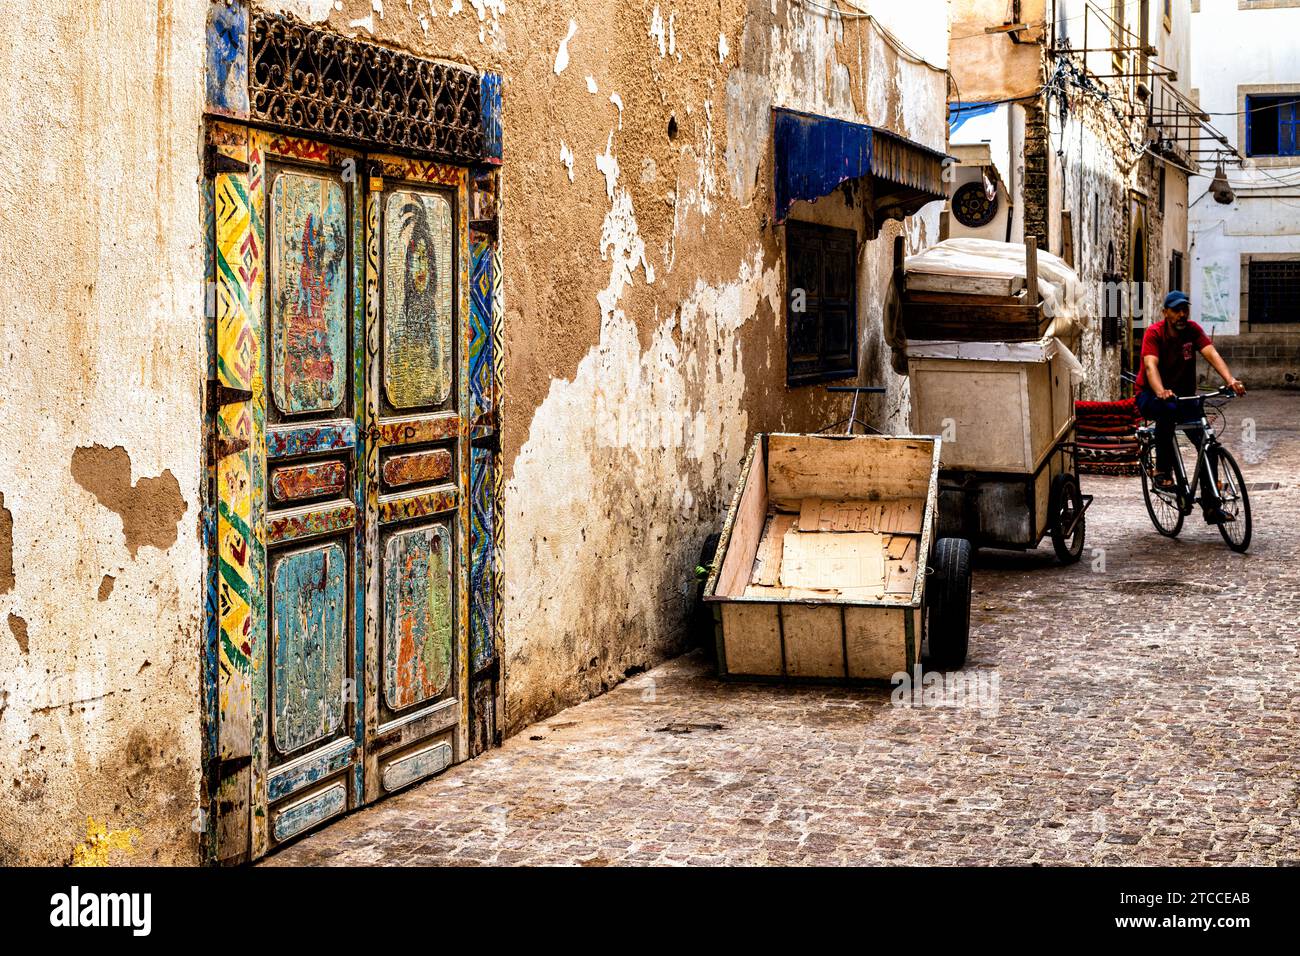 Essaouira, Marokko: Farbenfrohe Holztür mit Blick auf eine enge Gasse innerhalb der Stadt Medina. Marokkanisches Stadtbild. Stockfoto